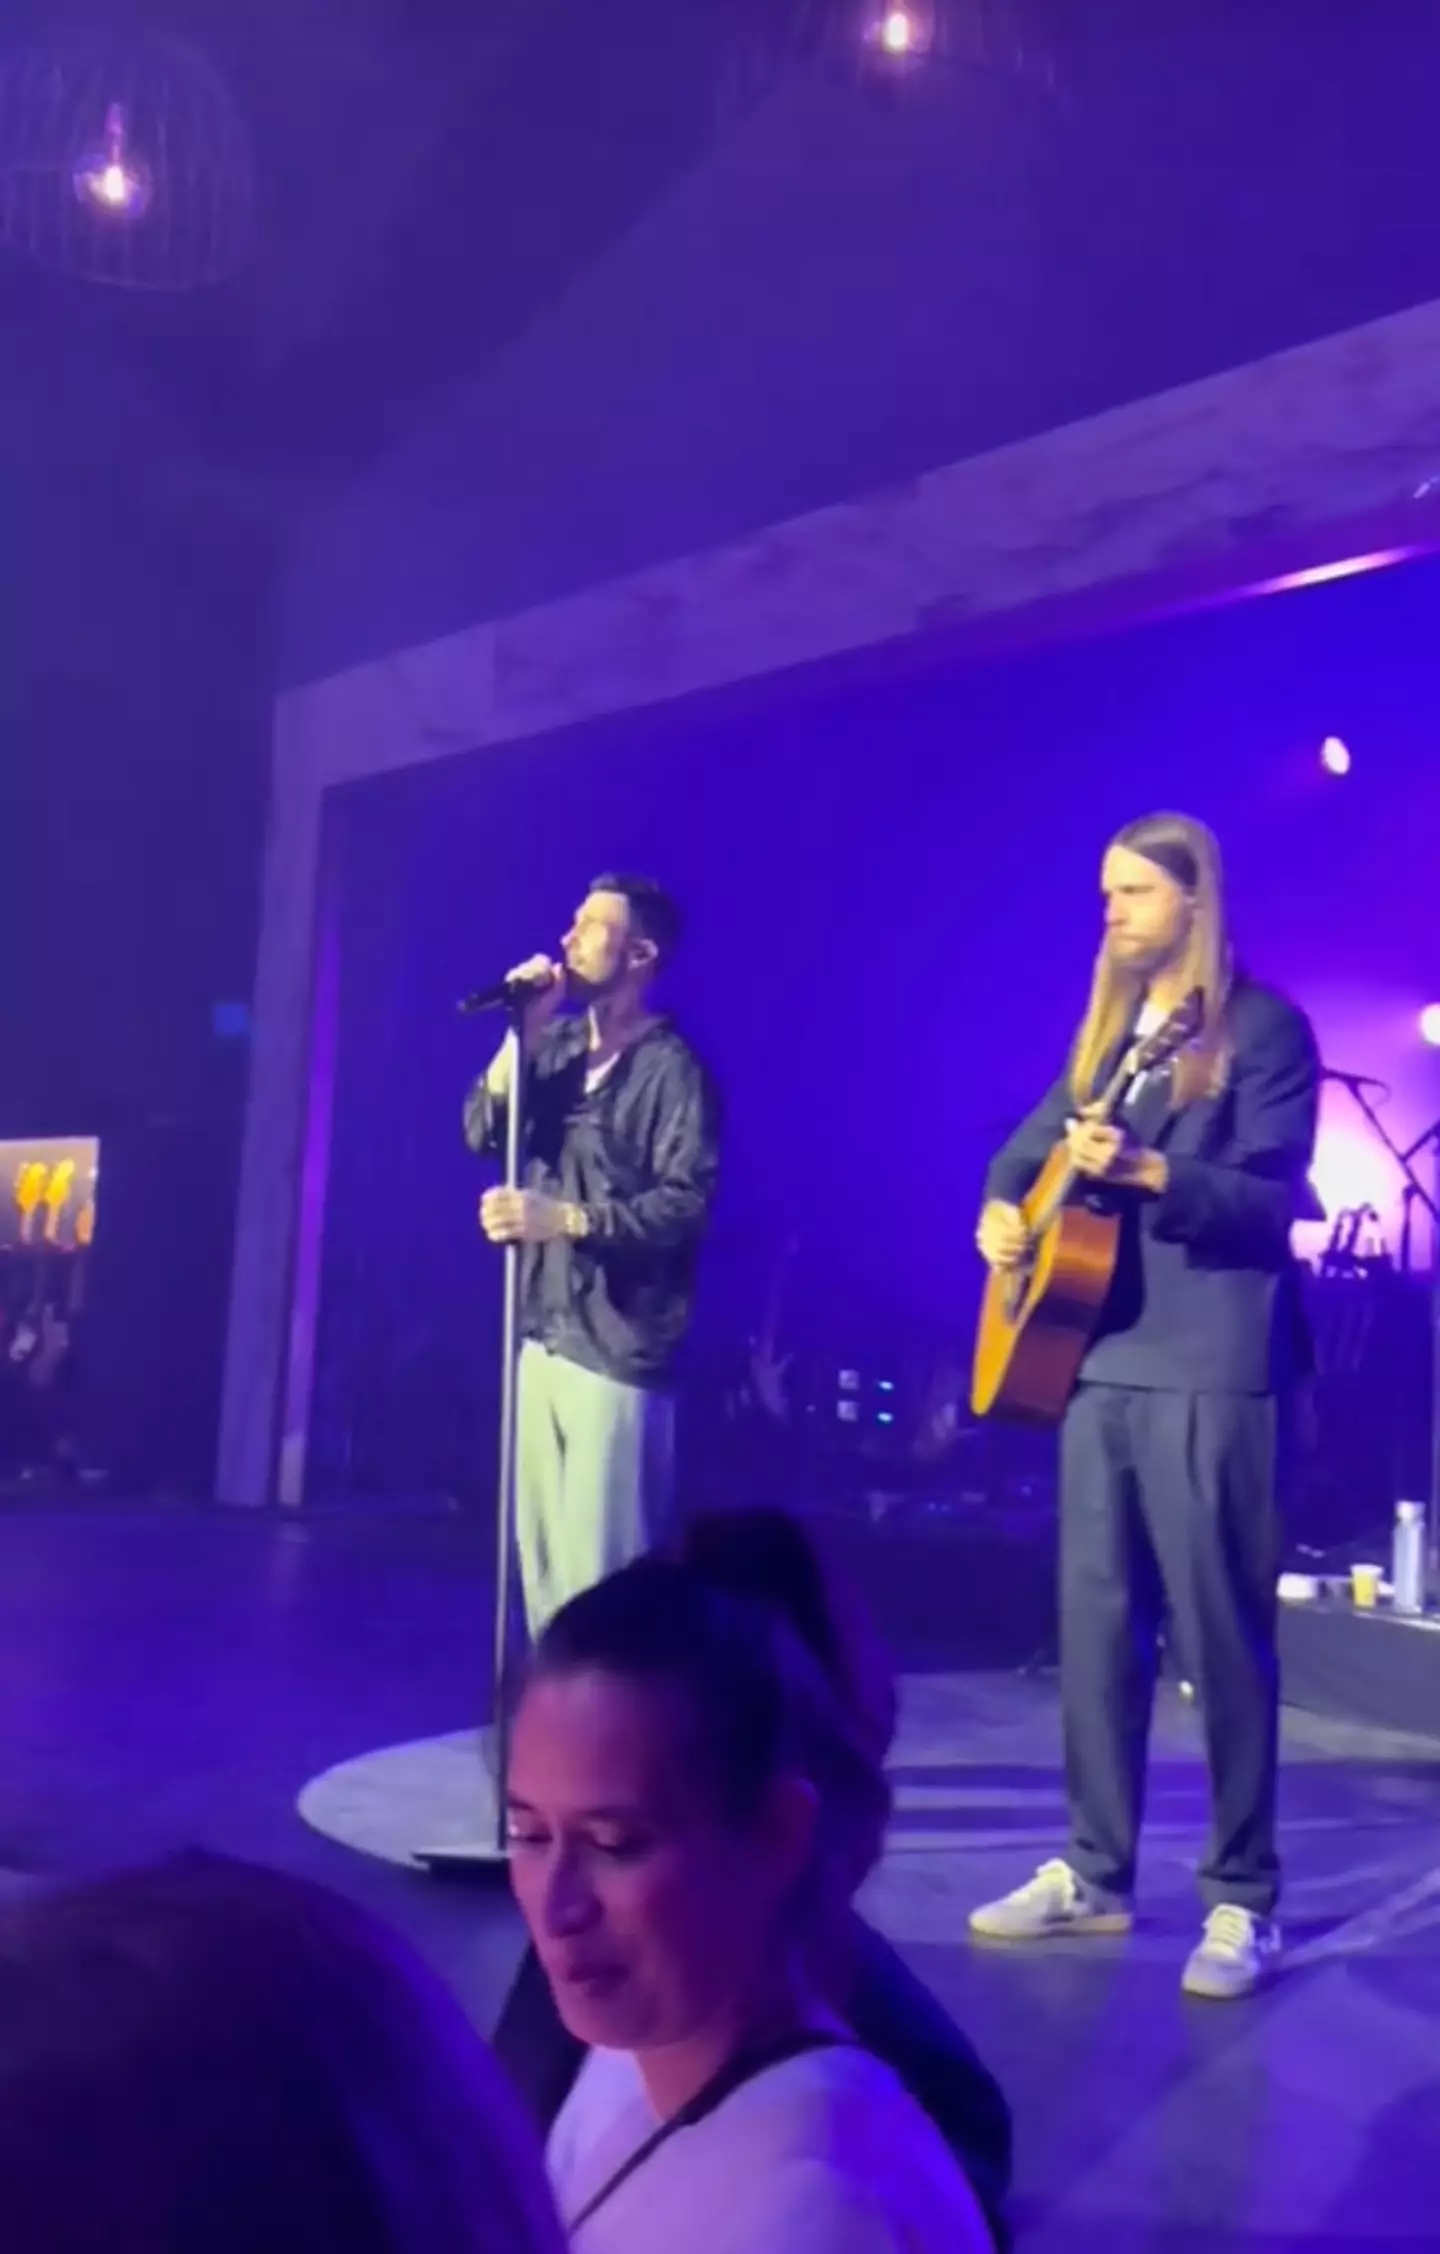 Maroon 5 performed at the lavish do.